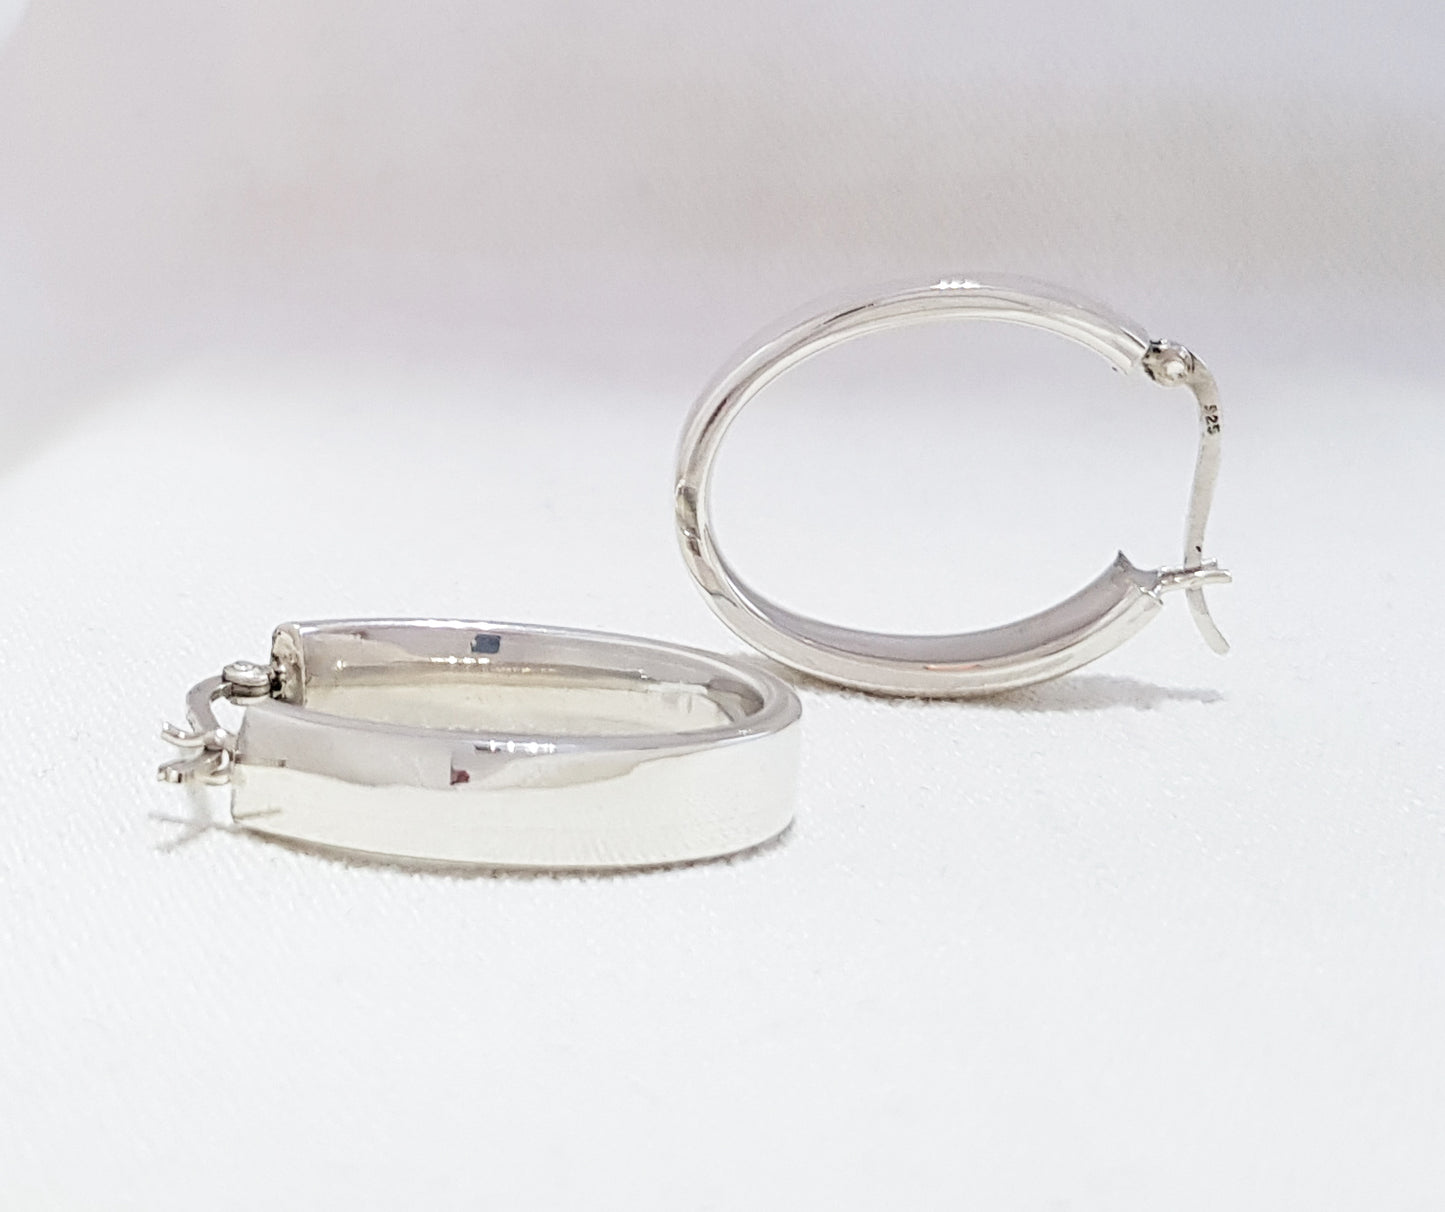 Sterling Silver Flat Oval Hoop Earrings